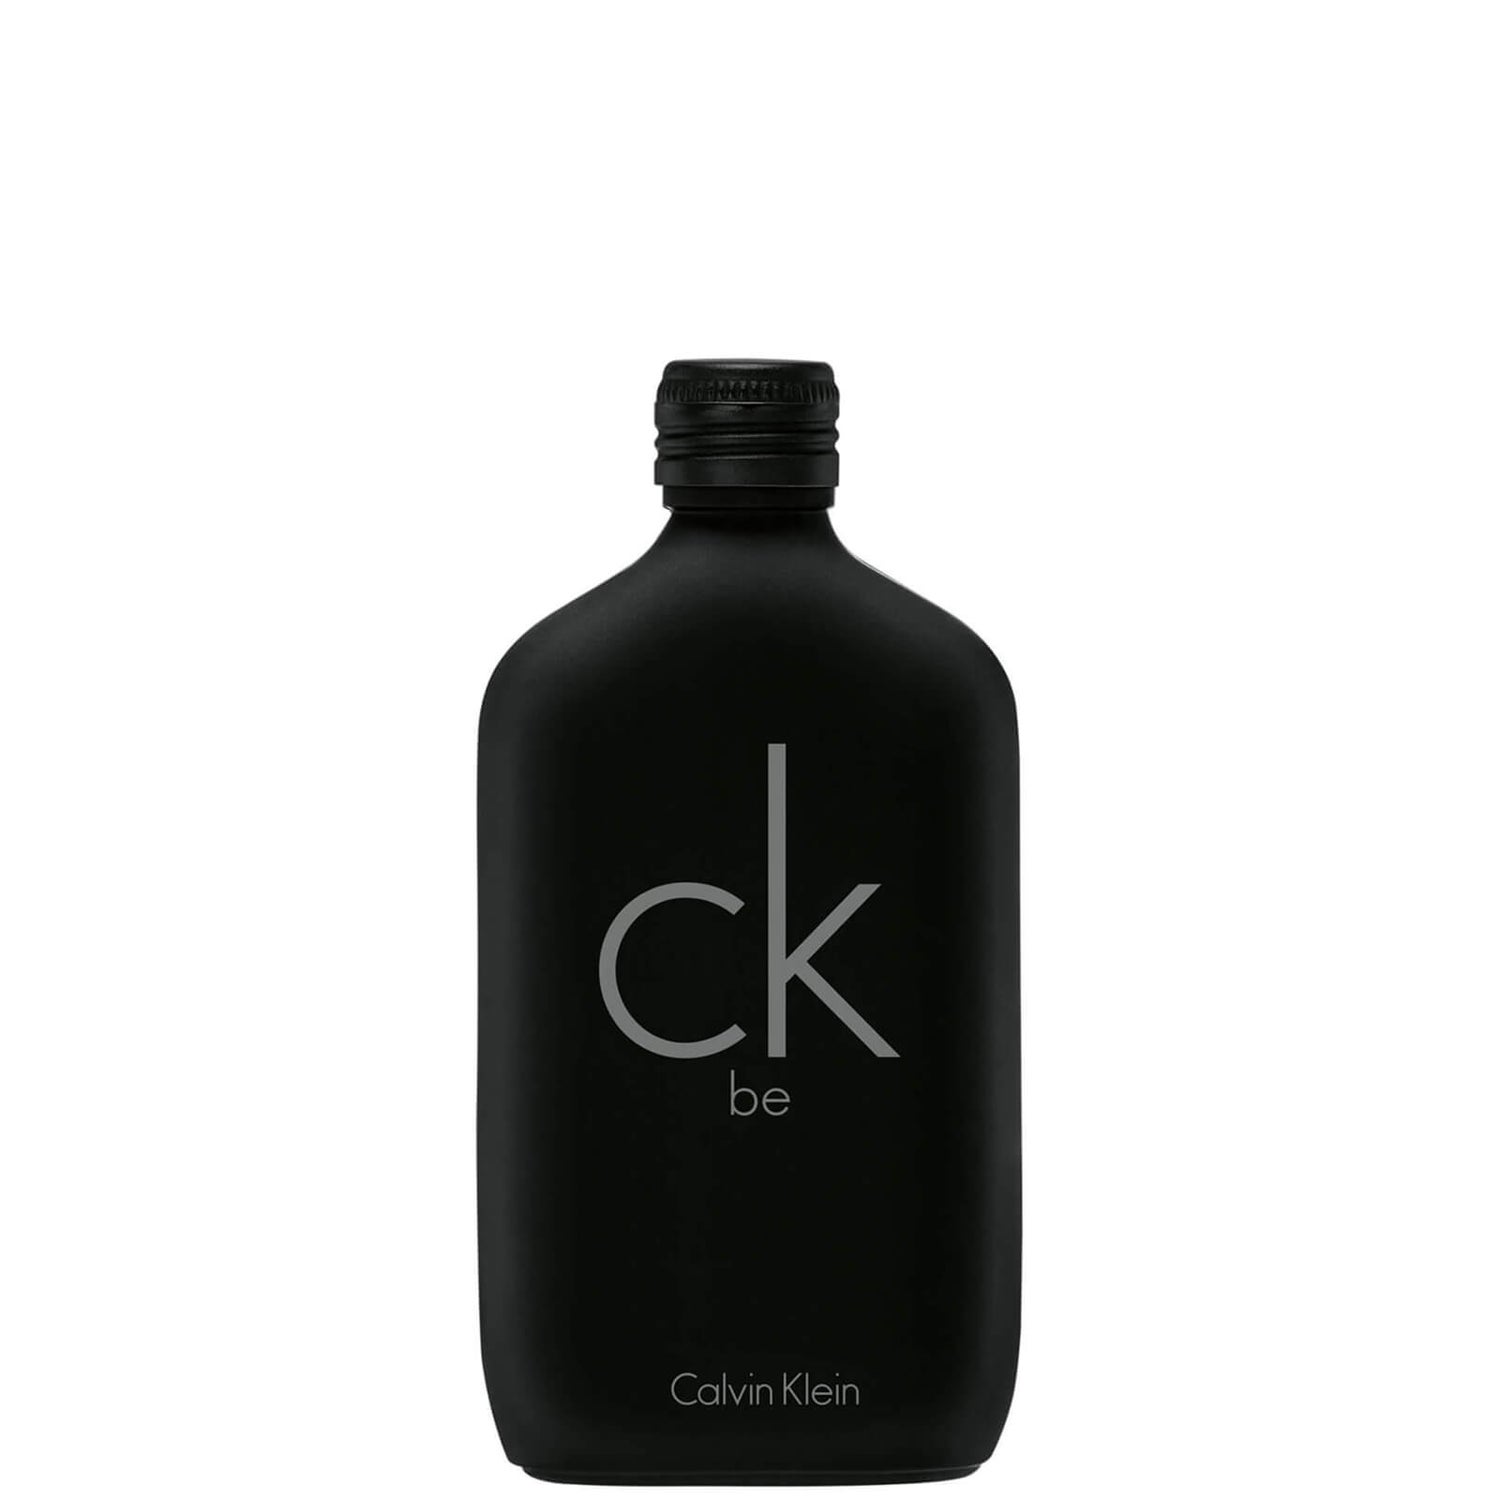 Calvin Klein CK Be Unisex Eau de Toilette 50ml